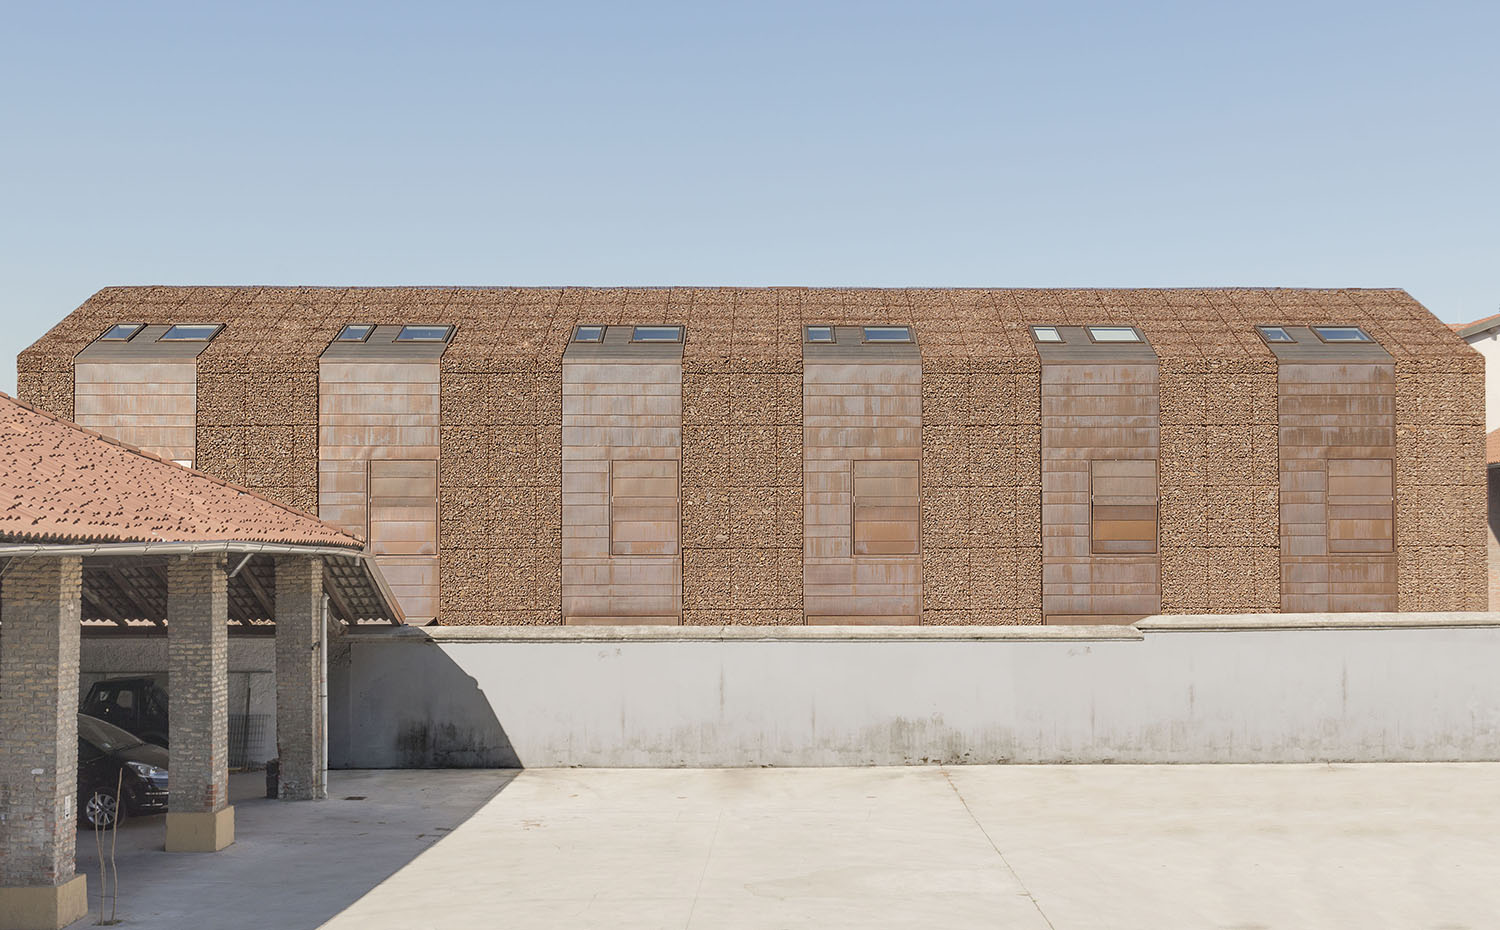 Seis casas en un granero, Sesto San Giovanni (Italia), Studio Roberto Mascazzini Architetto Finalistas de los Premios Europeos del Cobre en la Arquitectura